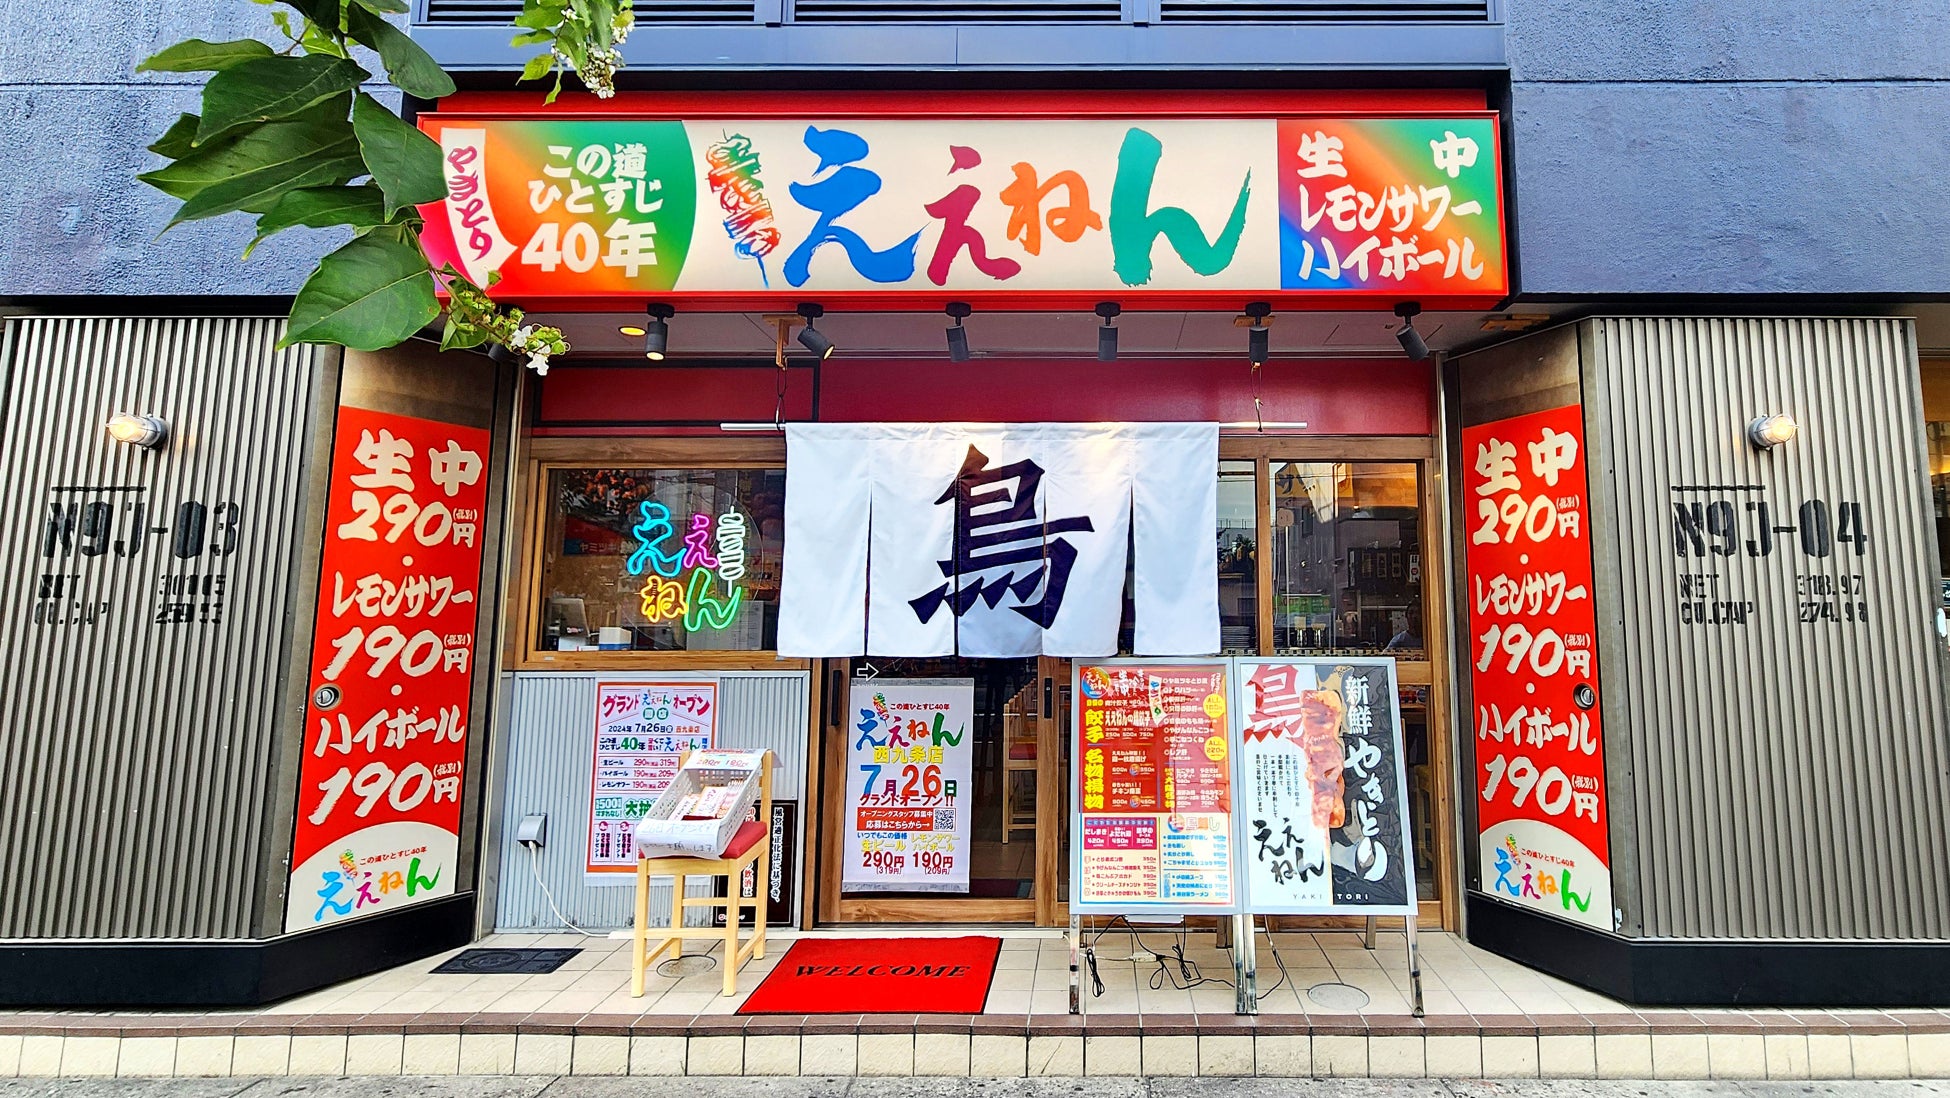 【 居心地いい空間カフェ 】大阪市の人気カフェ「 Standard Café & Gallery 」2号店がOPEN！